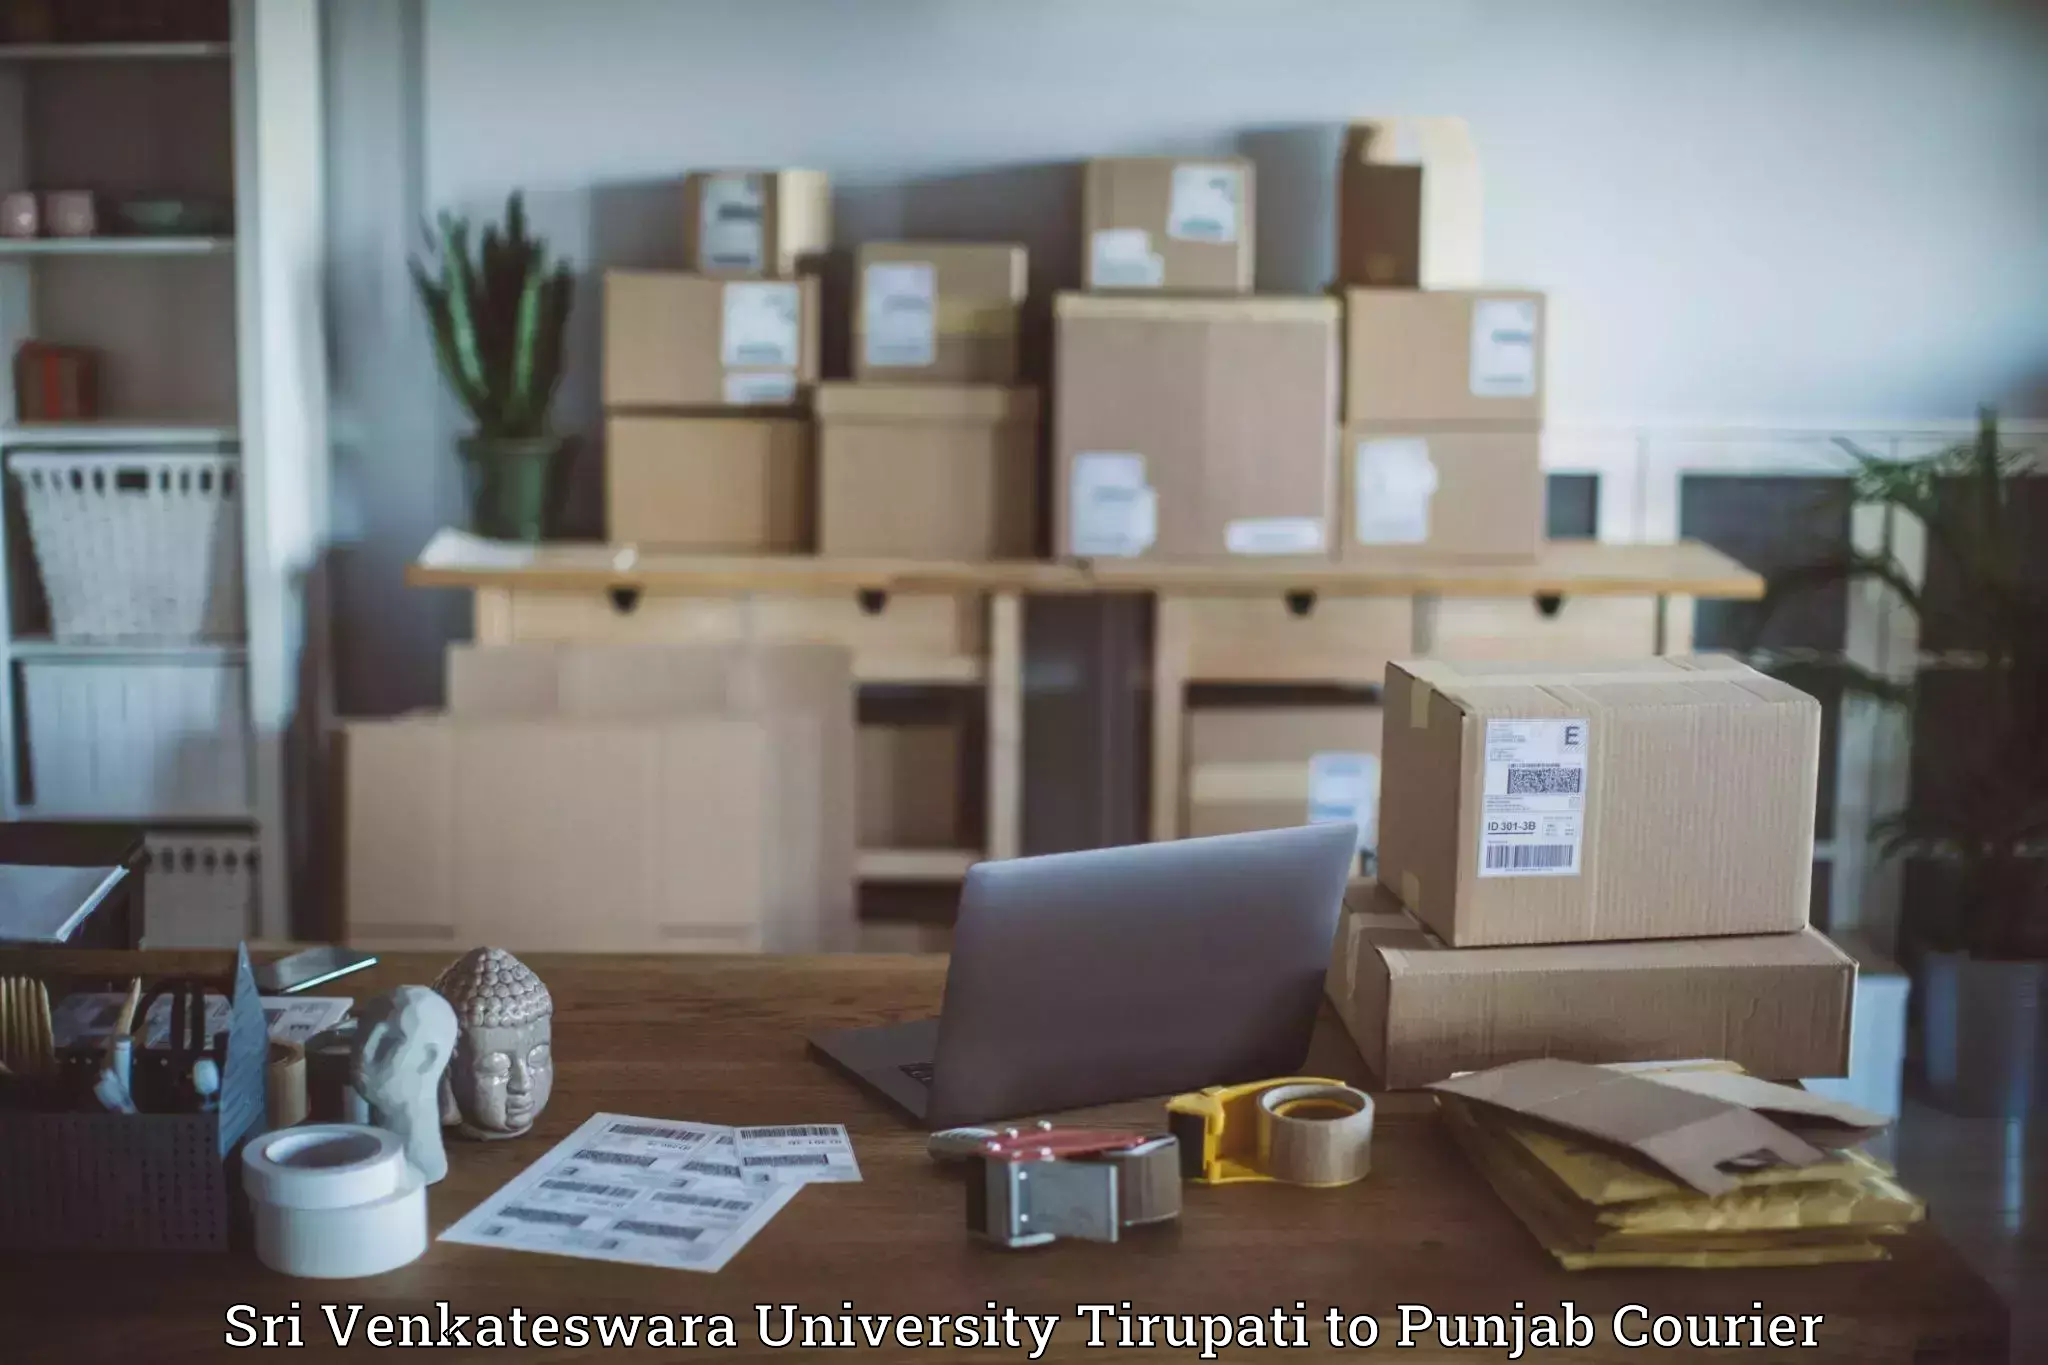 High-capacity parcel service Sri Venkateswara University Tirupati to Zira